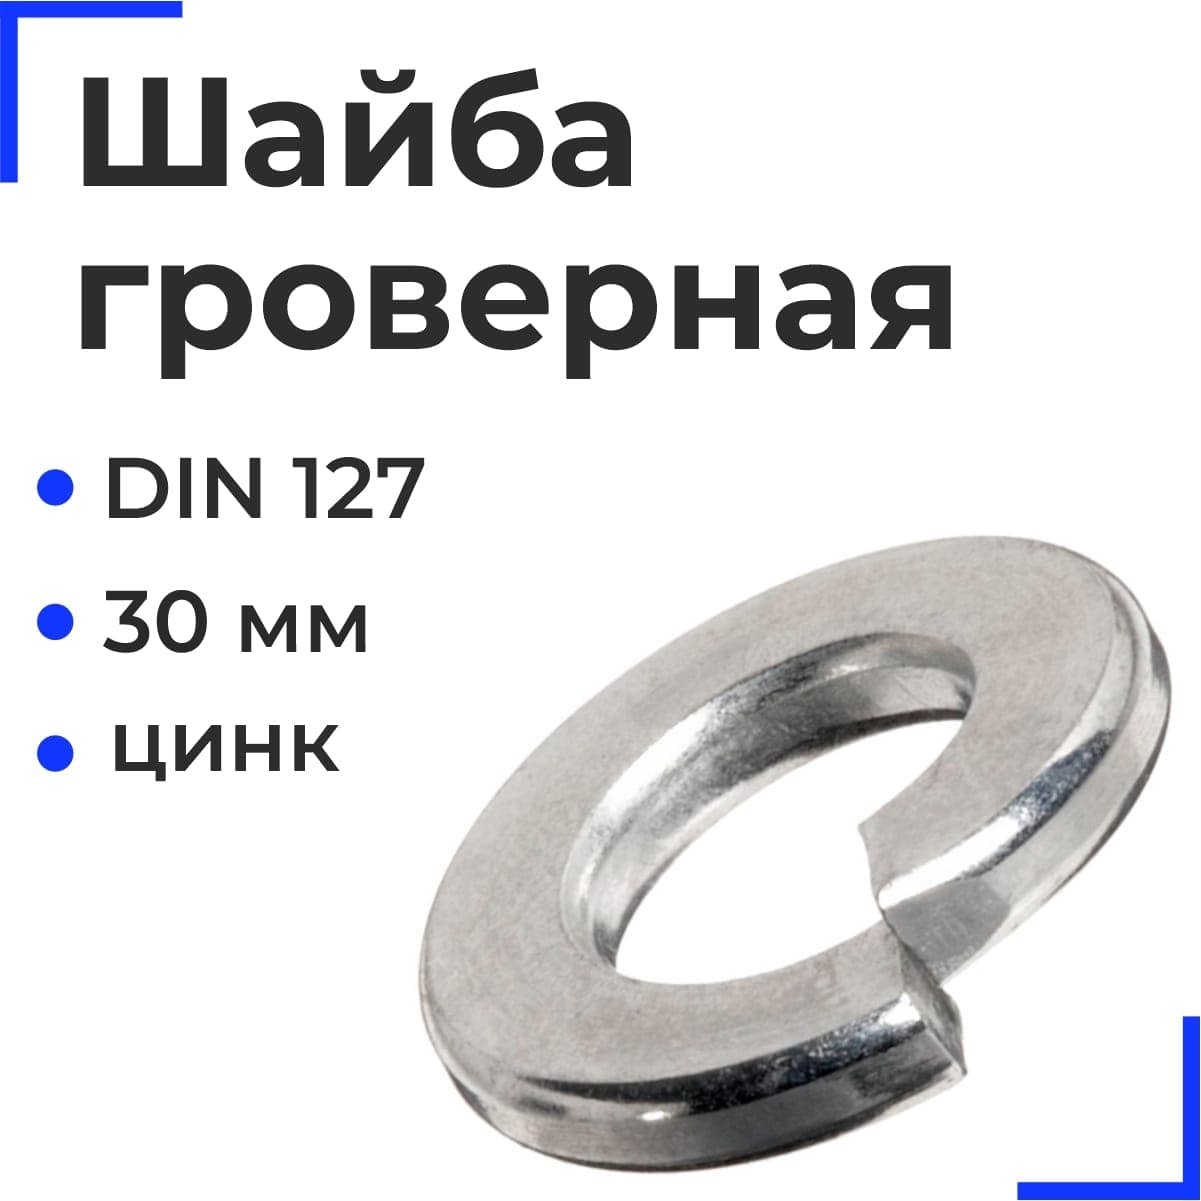 Шайба М30 DIN127 гроверная оцинк. (25кг)